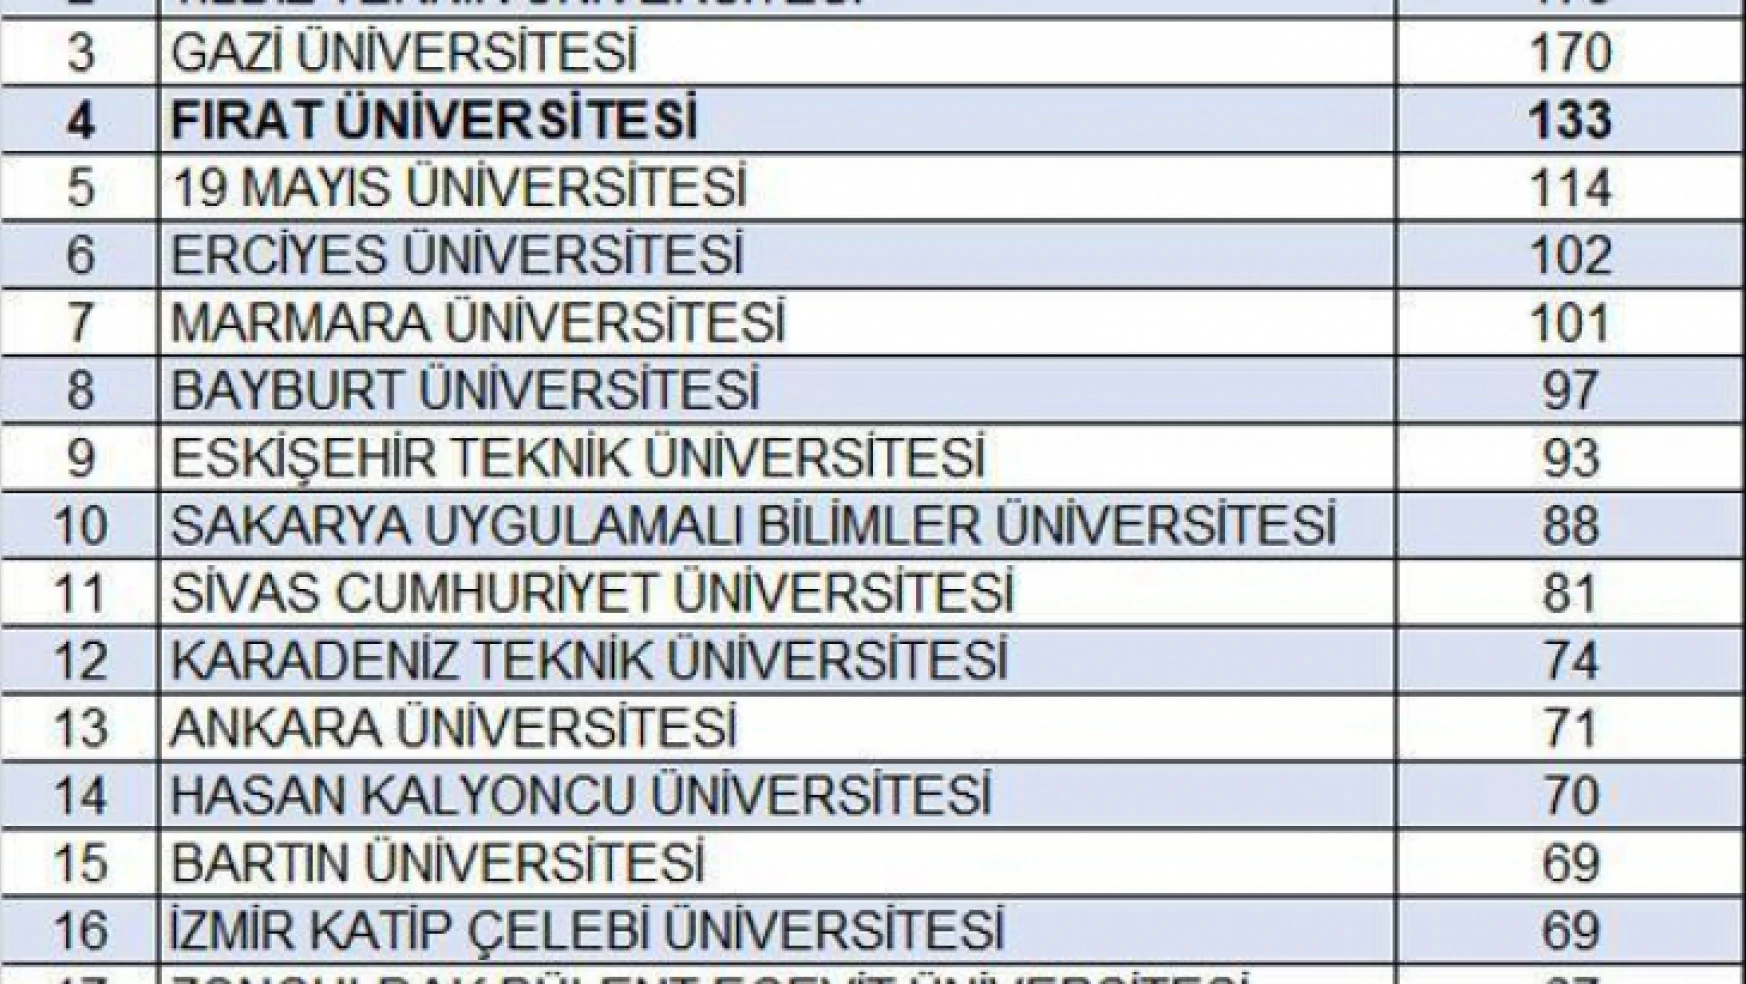 Elazığ Fırat Üniversitesi Türkiye'de 4. oldu